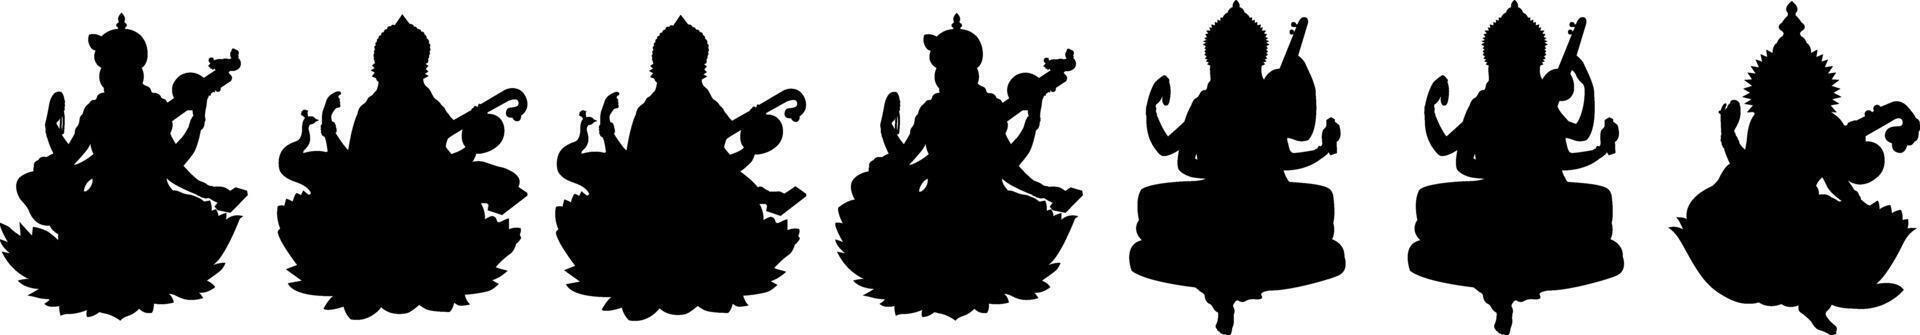 hindou déesse devi saraswati puja silhouettes conception vecteur